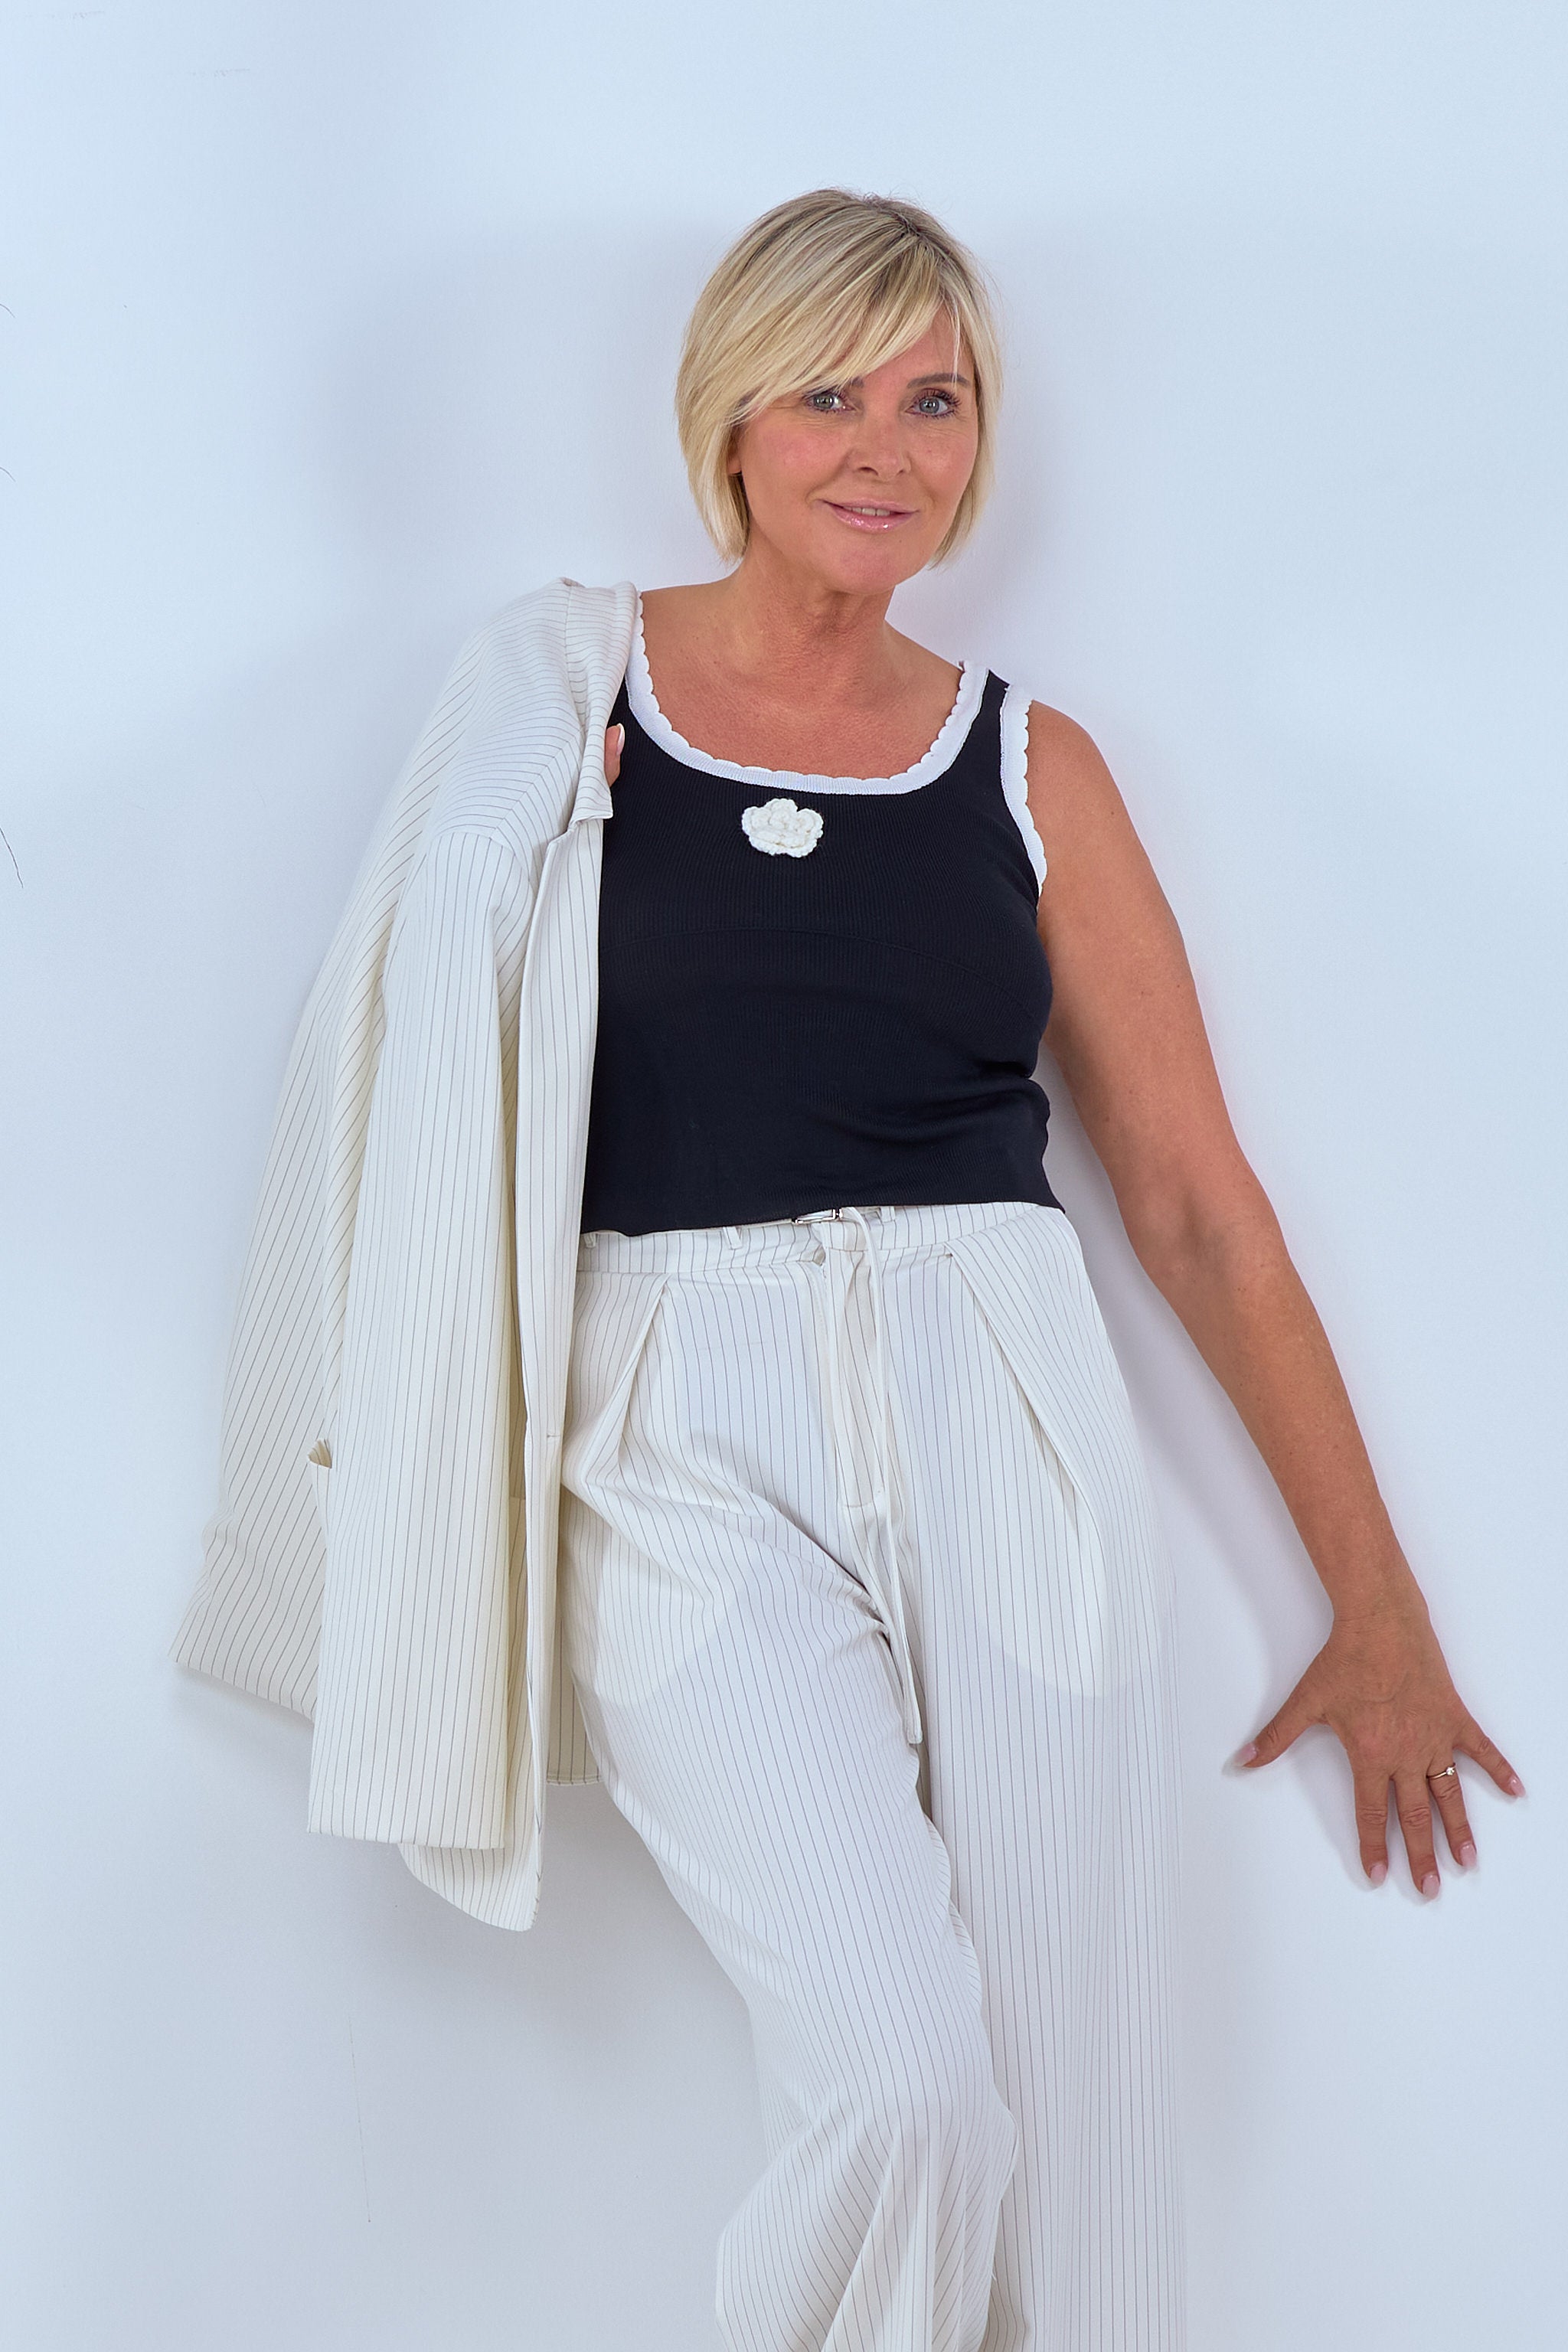 Damen Stricktop mit Blume in schwarz-weiß von Trends & Lifestyle Deutschland GmbH